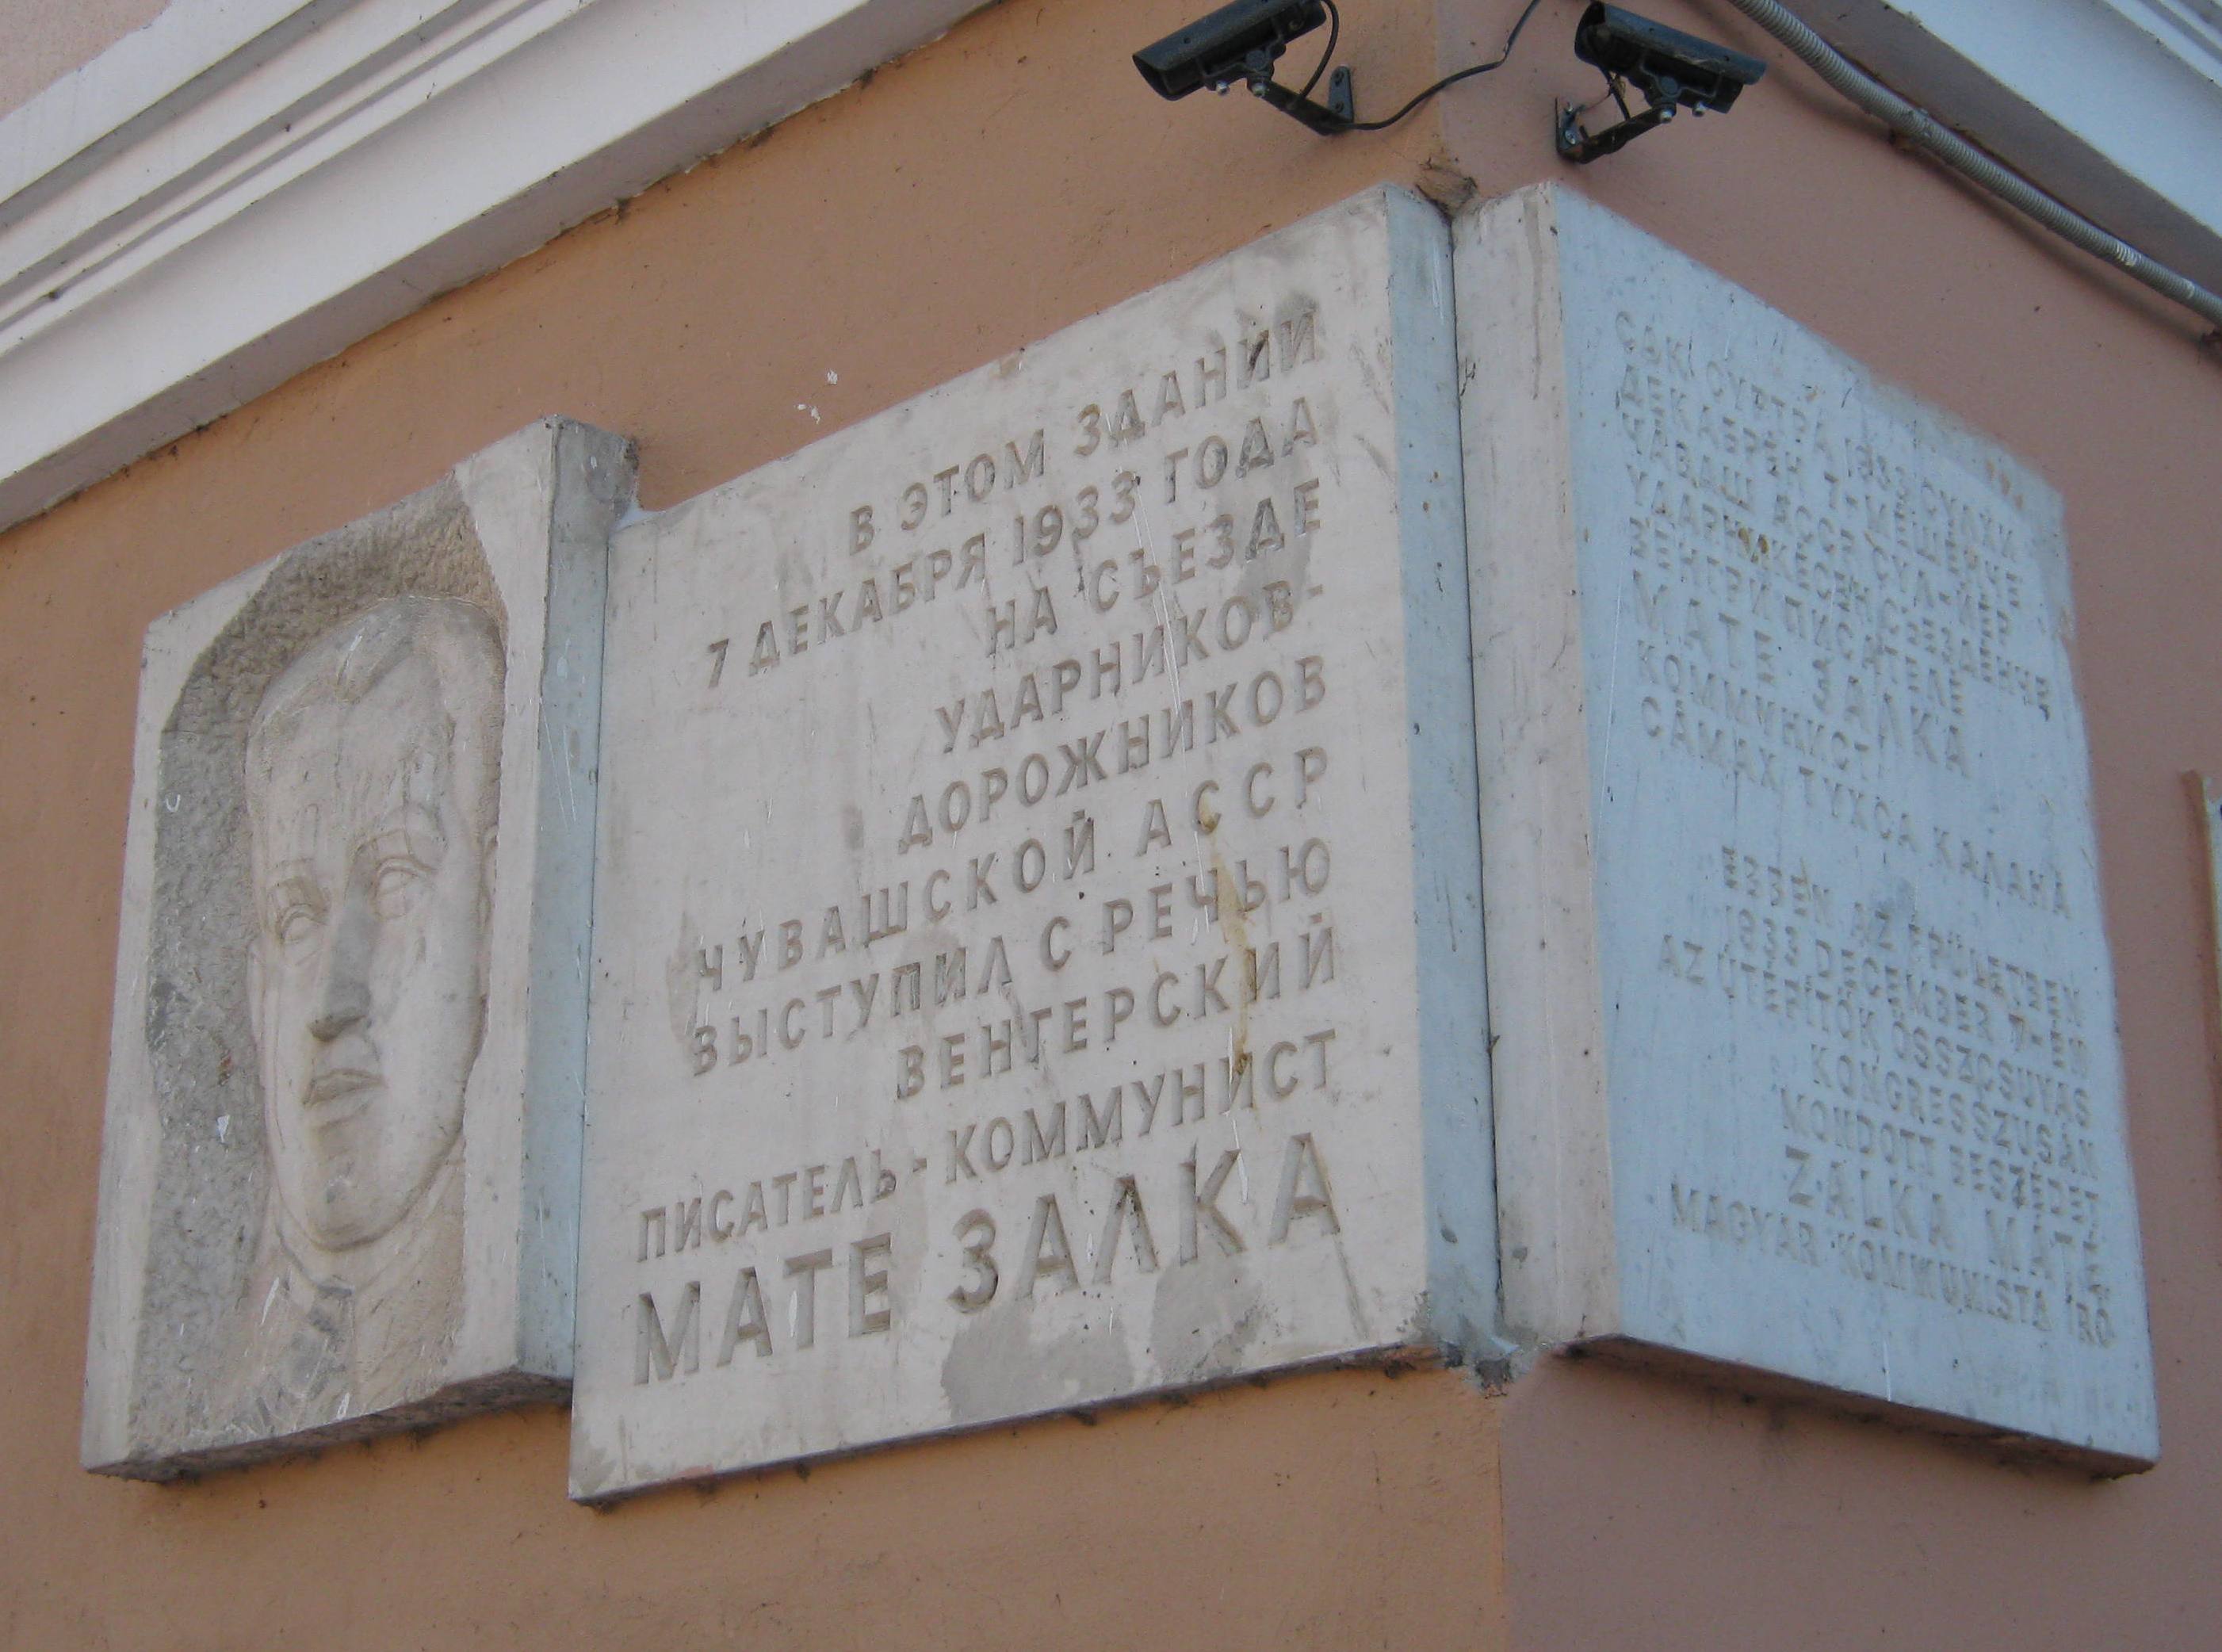 Мемориальная доска на здании в Чебоксарах, где в 1933 выступал М. Залка.